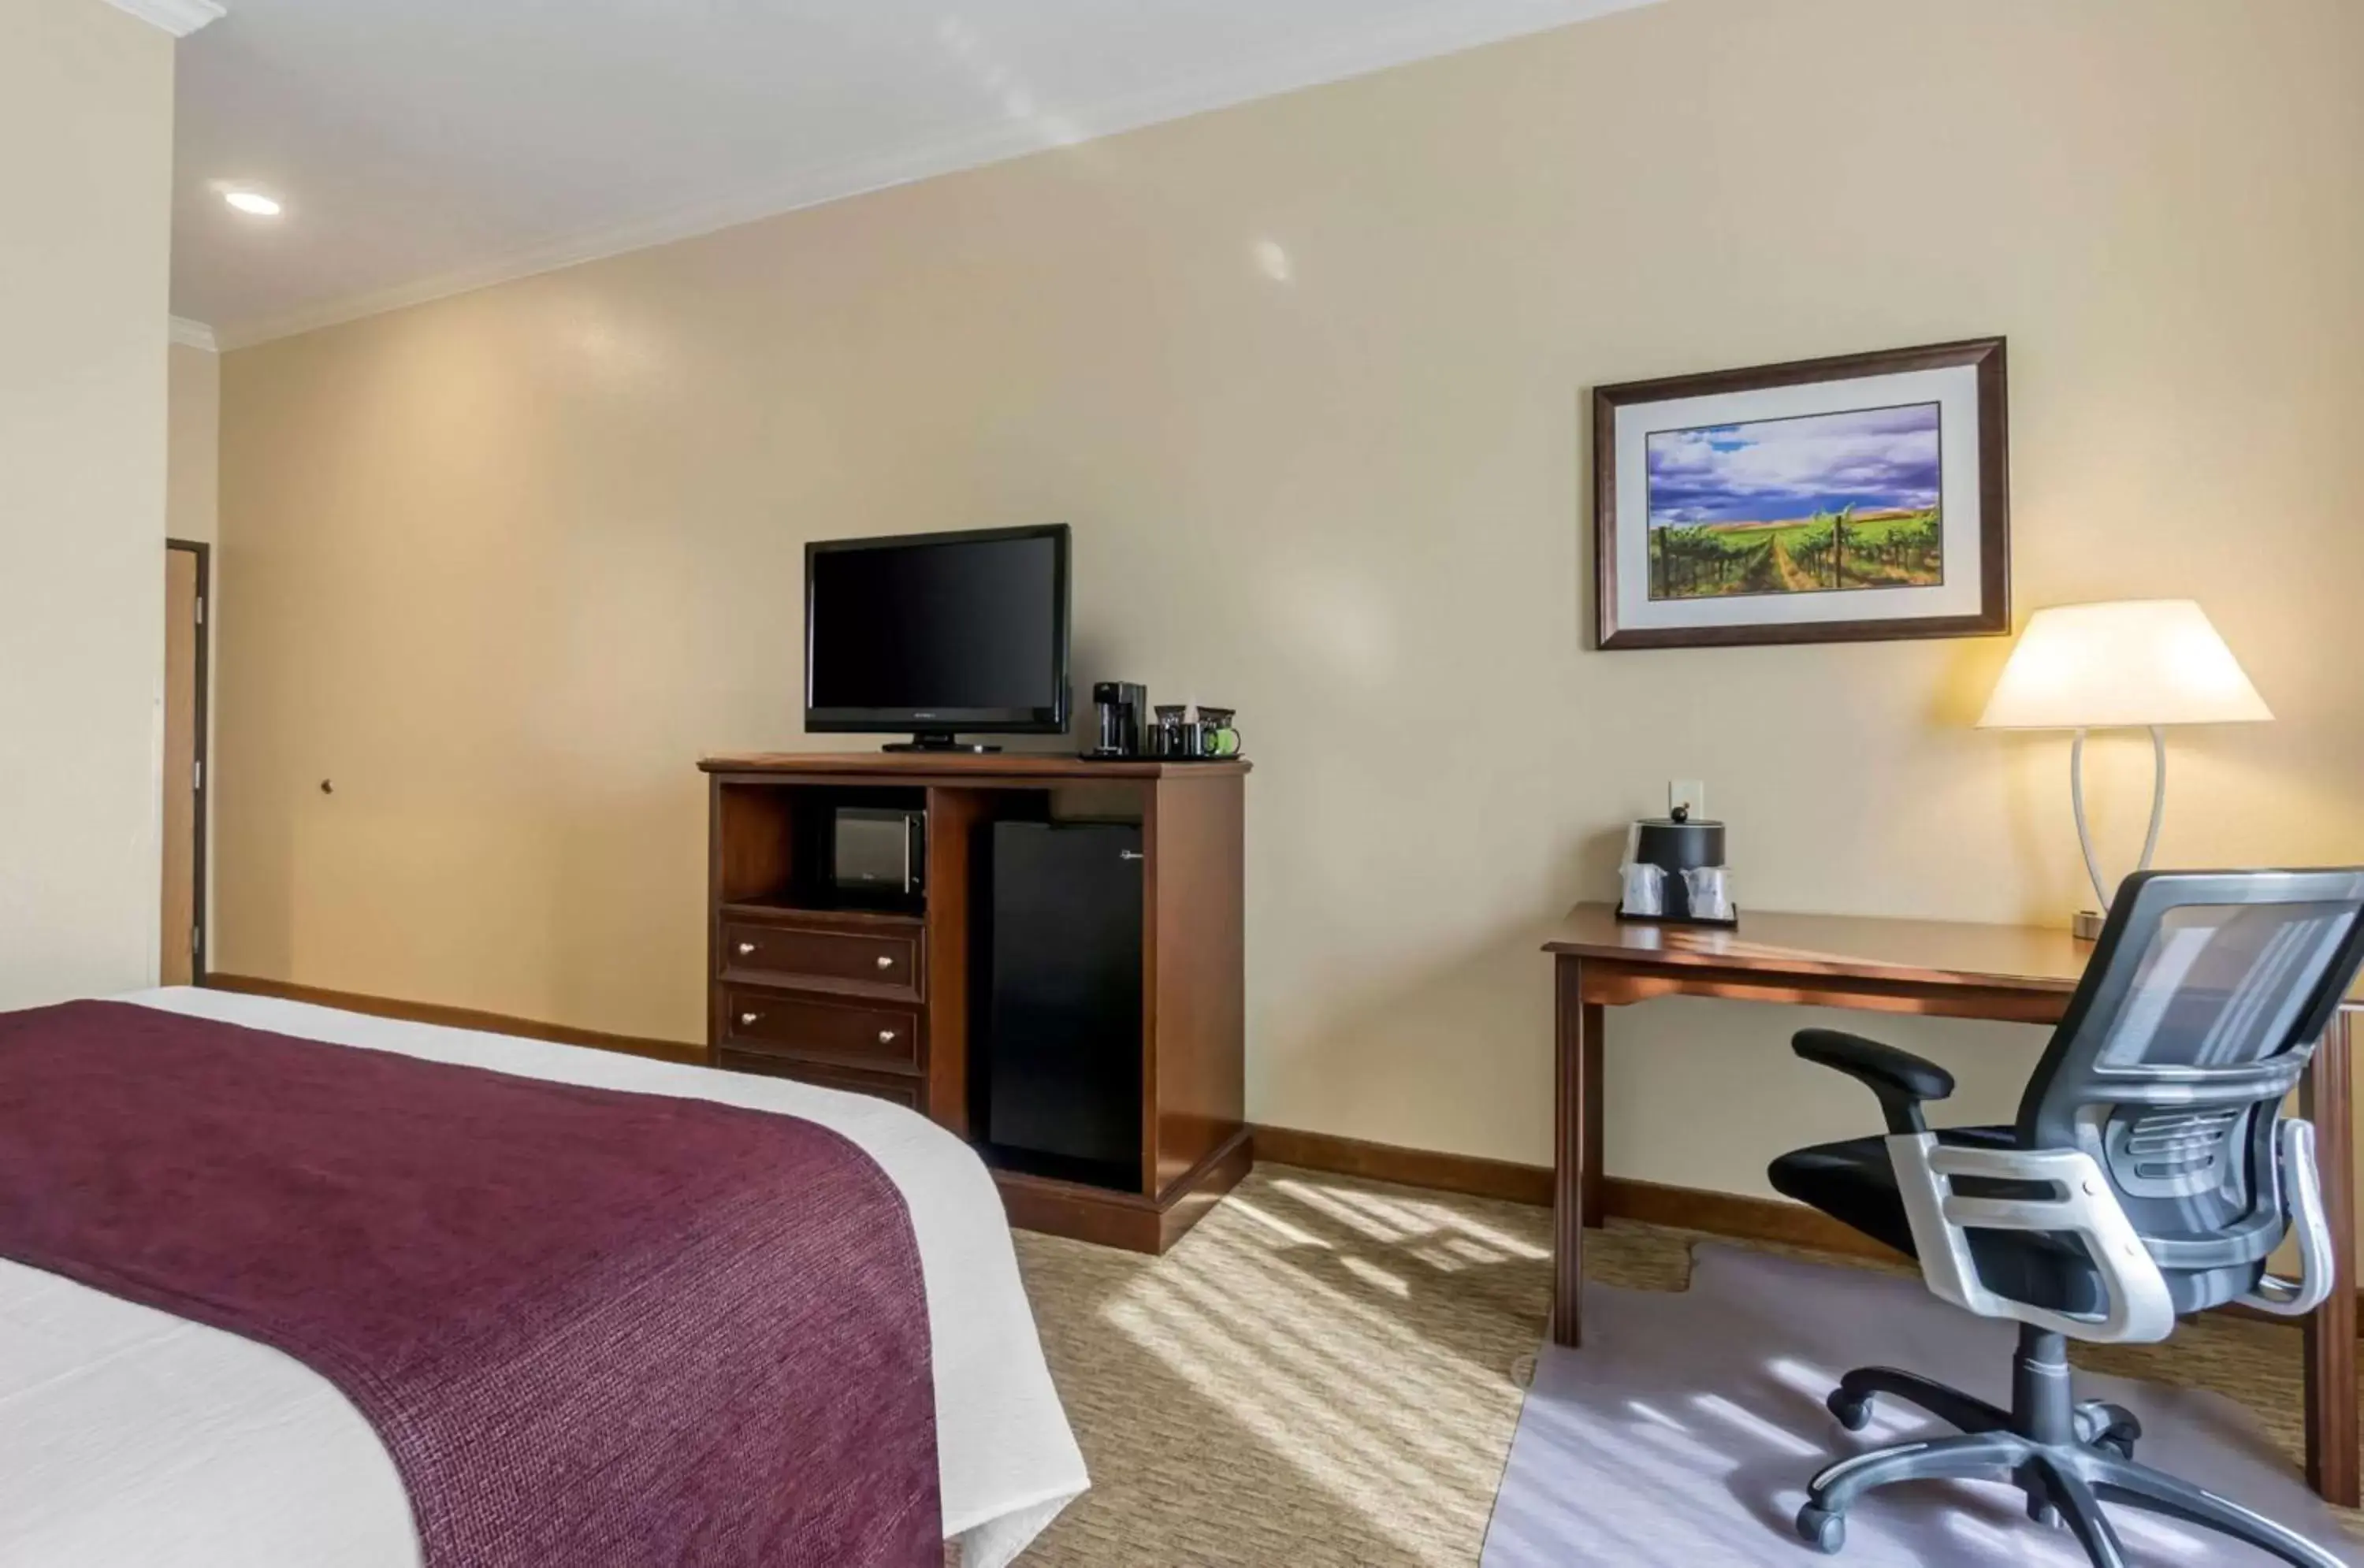 Bedroom, TV/Entertainment Center in Best Western Plus Grapevine Inn